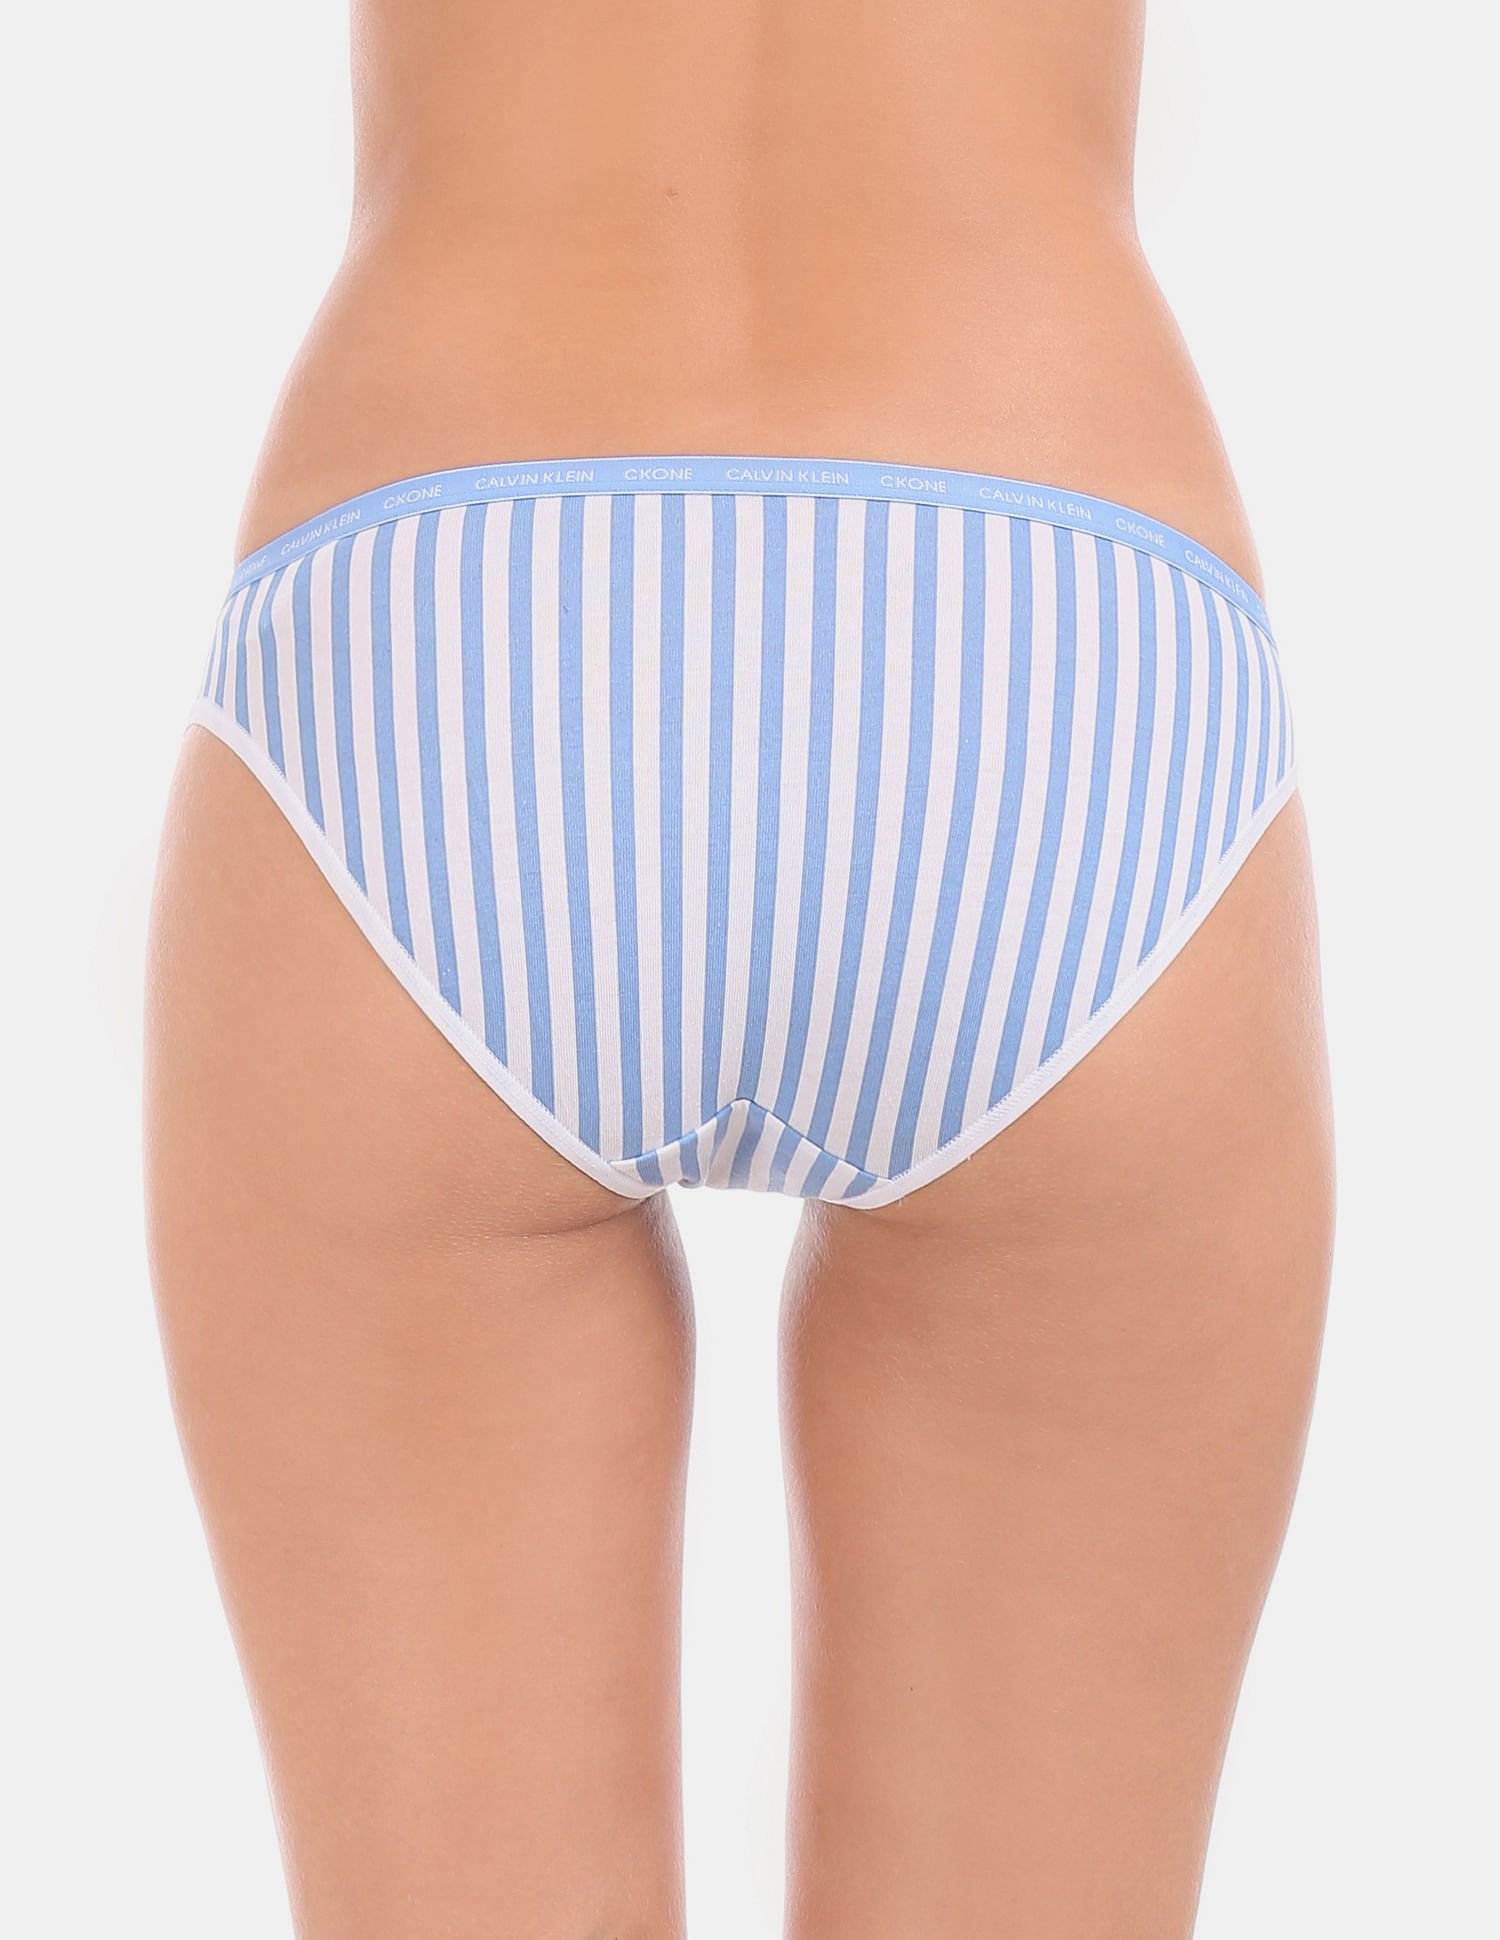 Blue Calvin Klein Women's Underwear